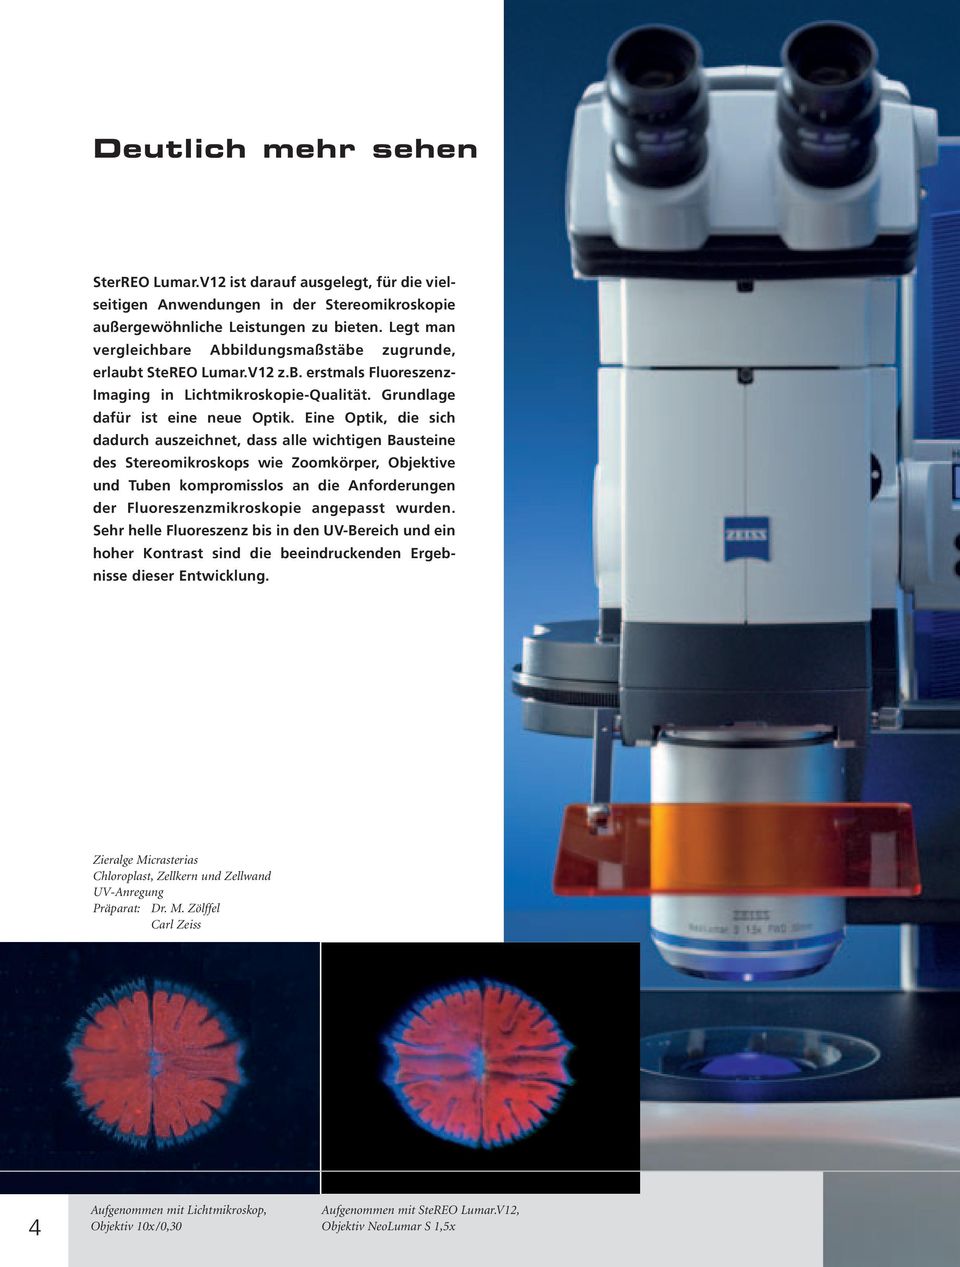 Eine Optik, die sich dadurch auszeichnet, dass alle wichtigen Bausteine des Stereomikroskops wie Zoomkörper, Objektive und Tuben kompromisslos an die Anforderungen der Fluoreszenzmikroskopie